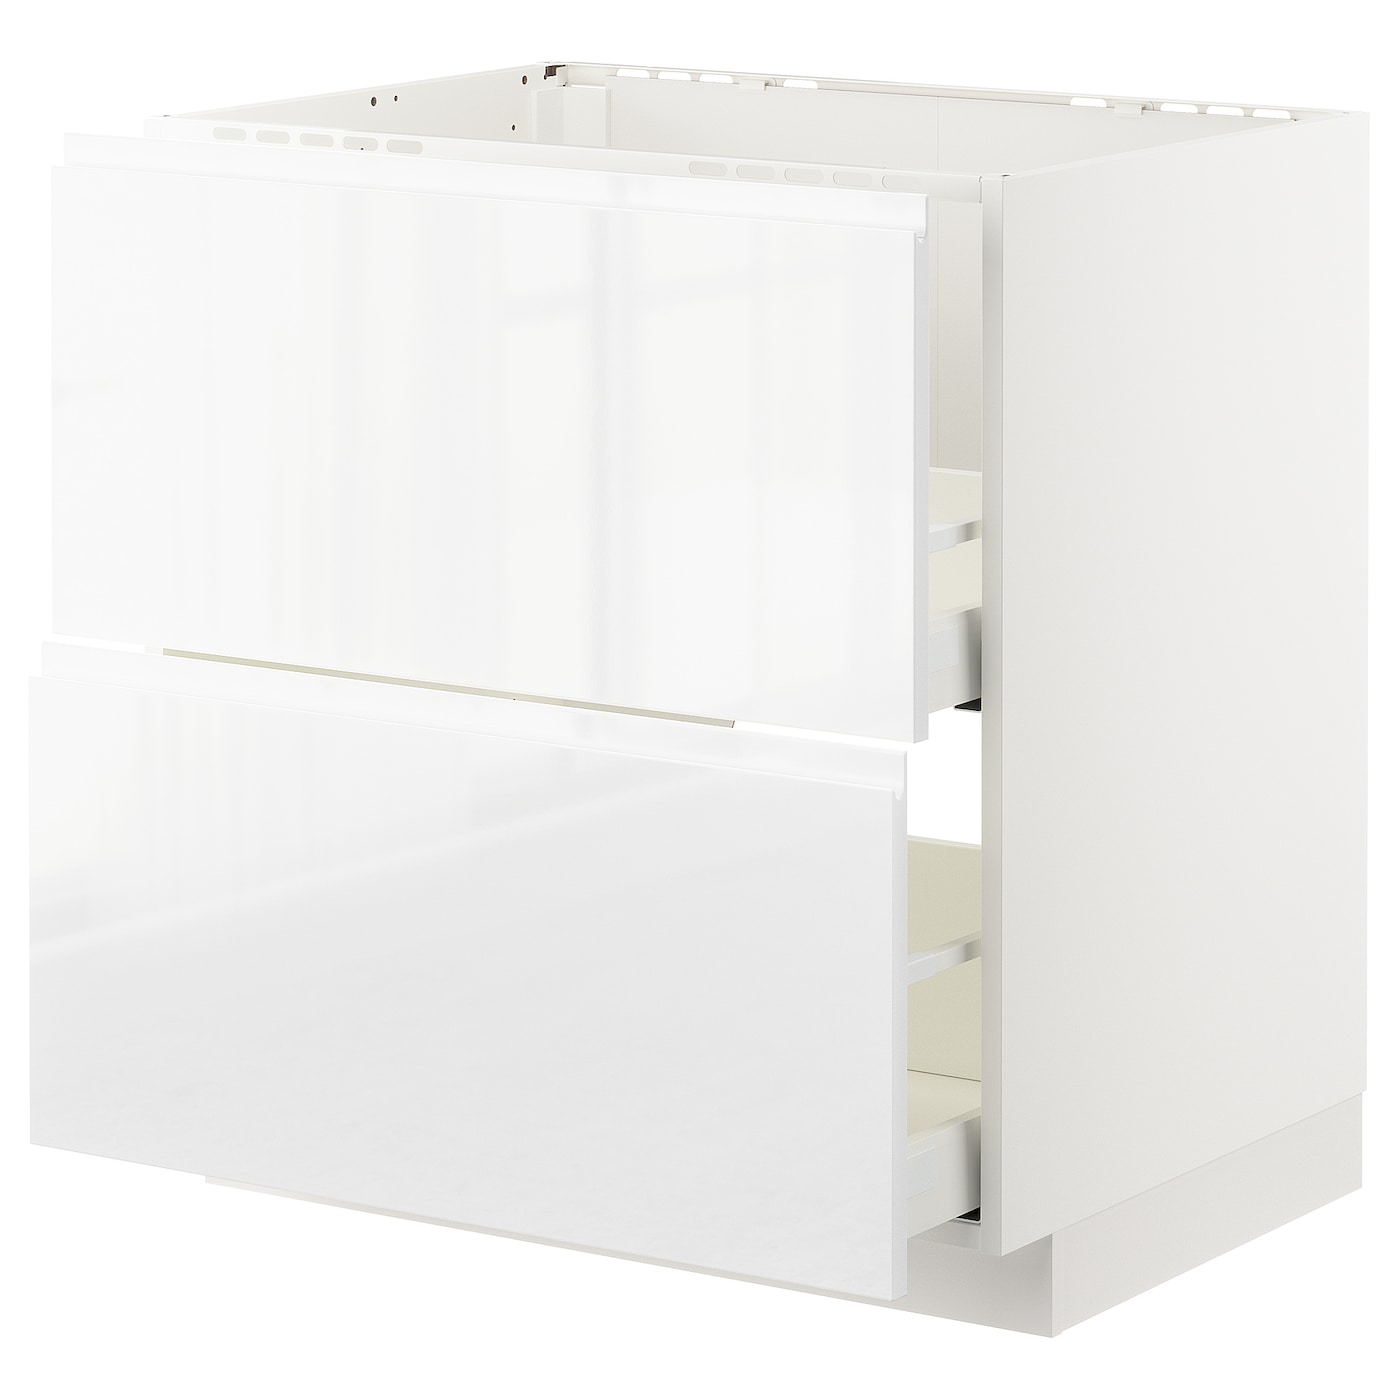 Напольный кухонный шкаф  - IKEA METOD MAXIMERA, 88x62x80см, белый, МЕТОД МАКСИМЕРА ИКЕА